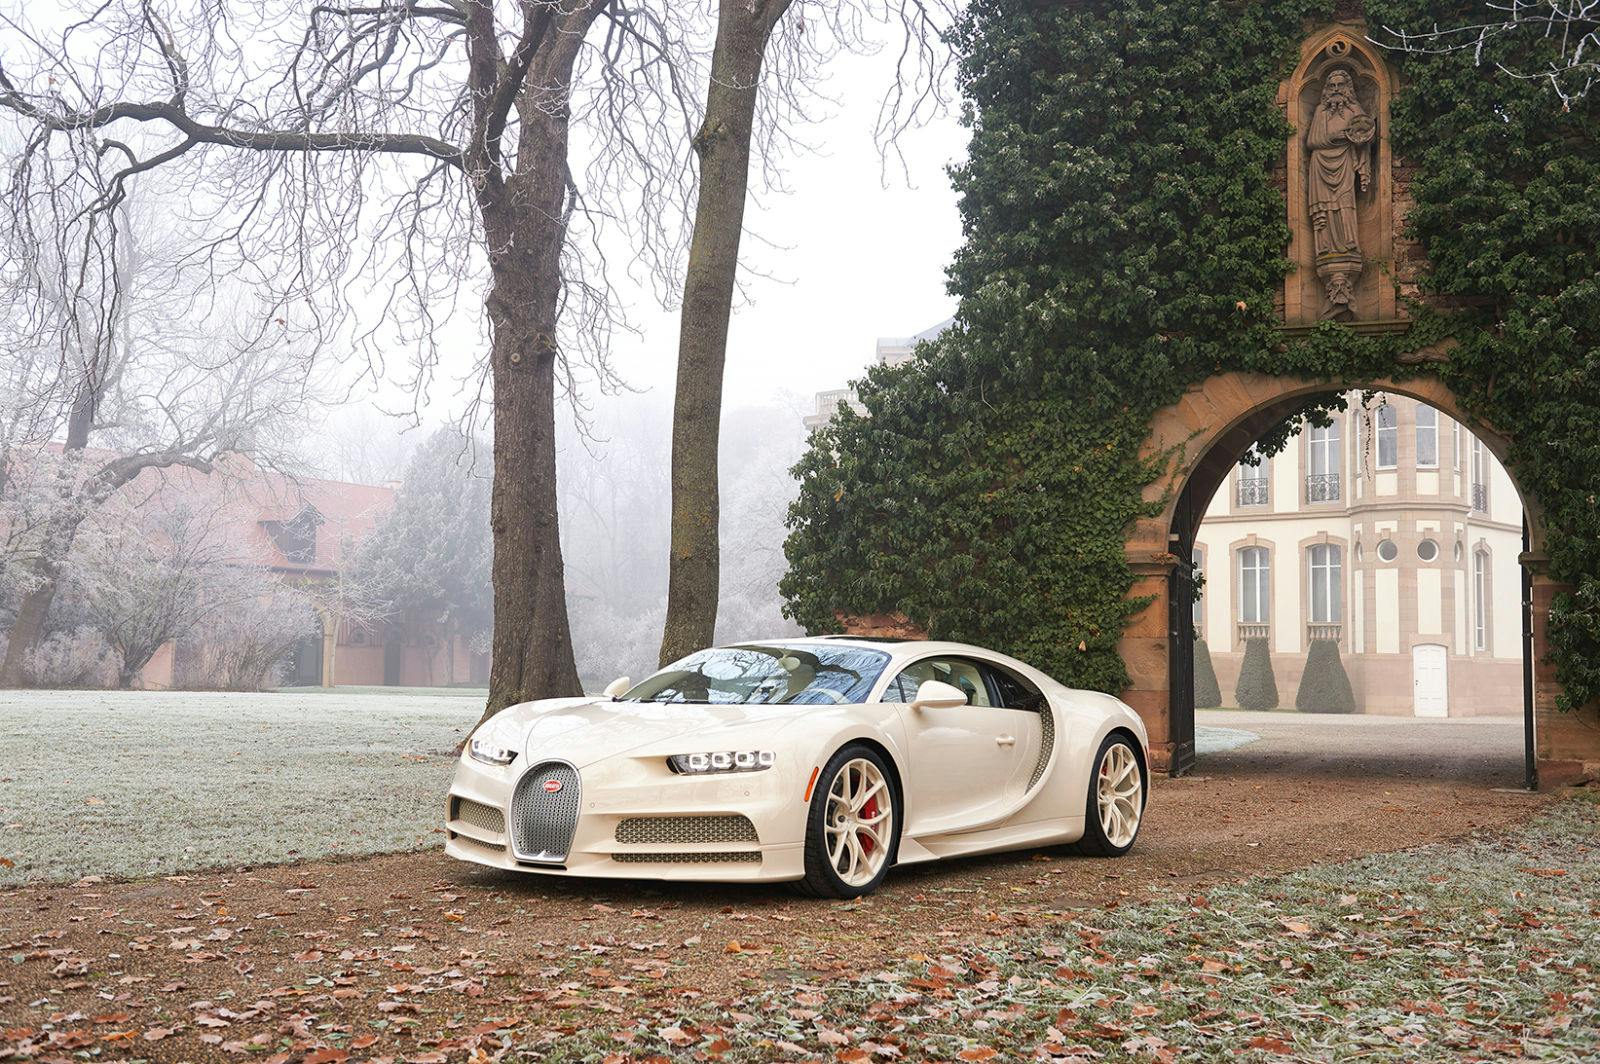 A truly unique Bugatti: the ”Chiron habillé par Hermès”.